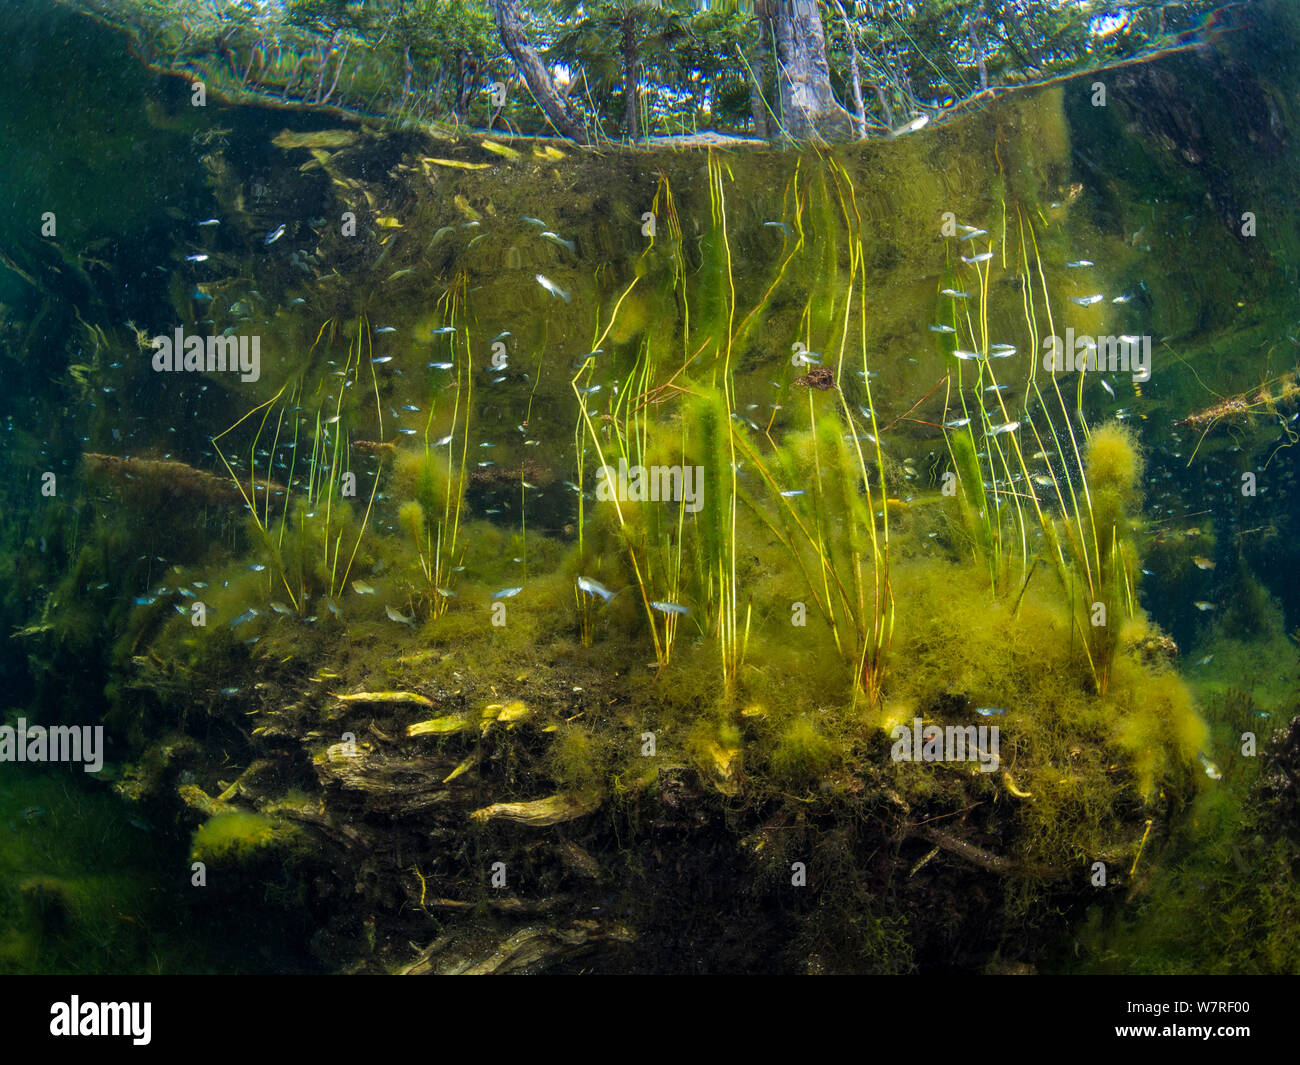 Pesce (Poecilia) nuoto attraverso impianti in un tipico scenario di un cenote di acqua dolce o dolina. Cancun, Yucatan, Messico. Foto Stock